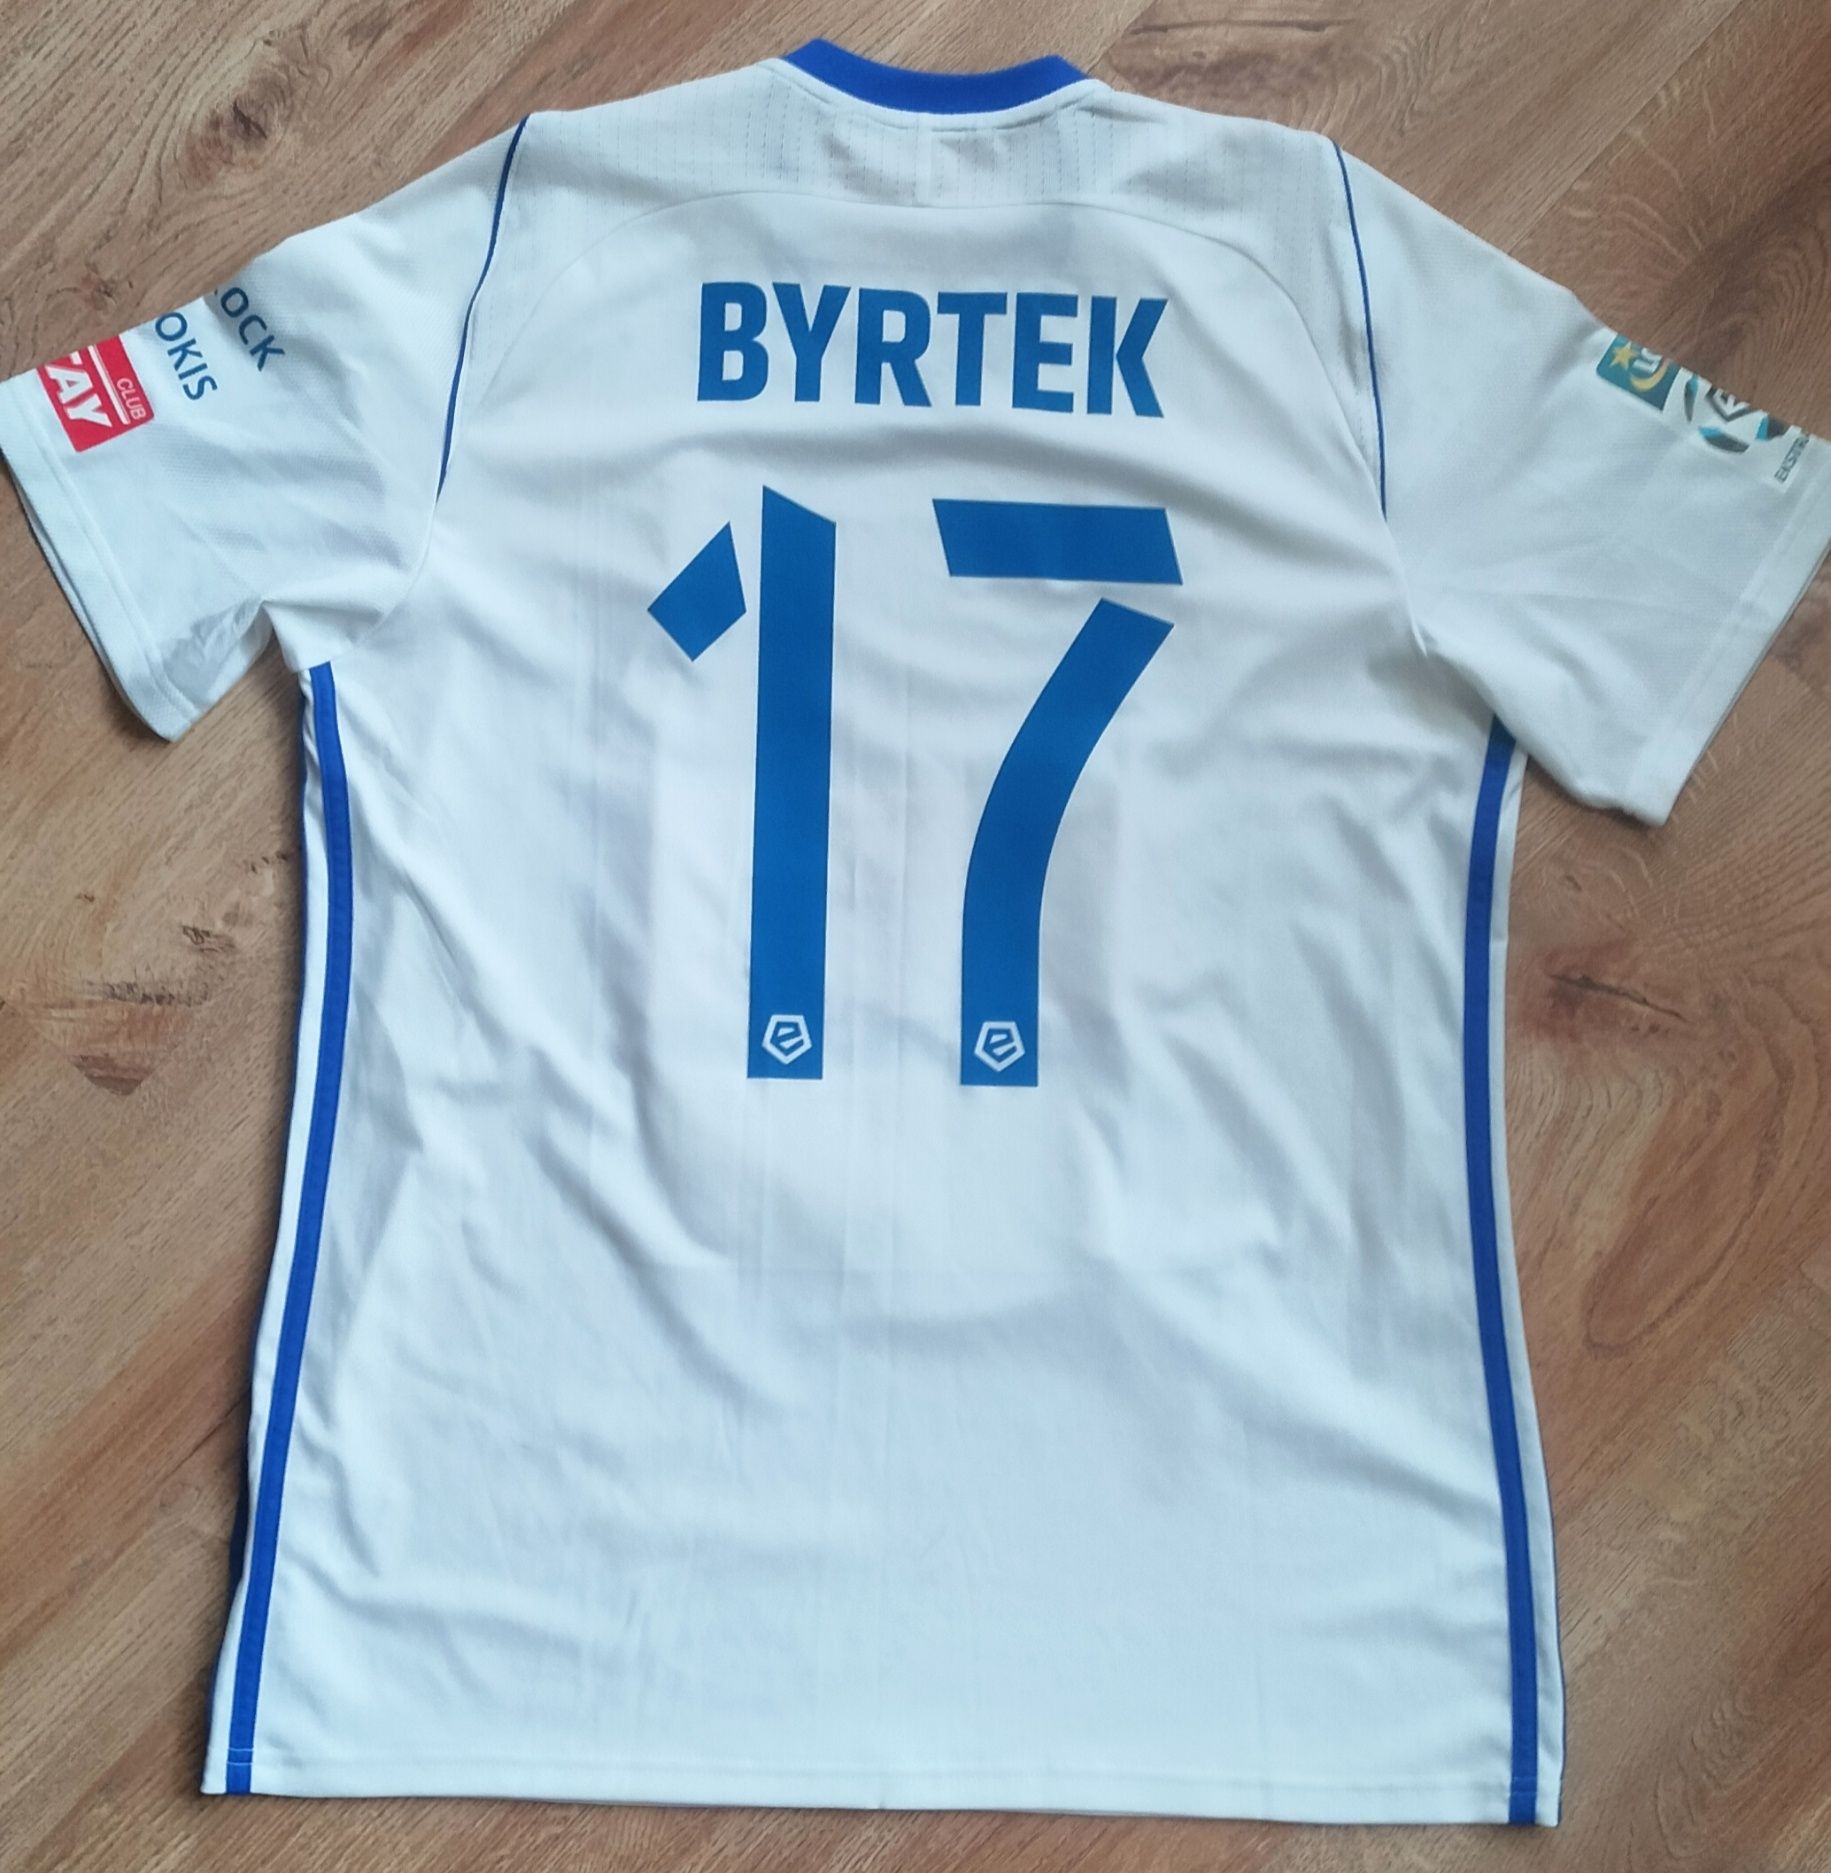 Koszulka meczowa Wisła Płock Byrtek z autografami całej drużyny 2017